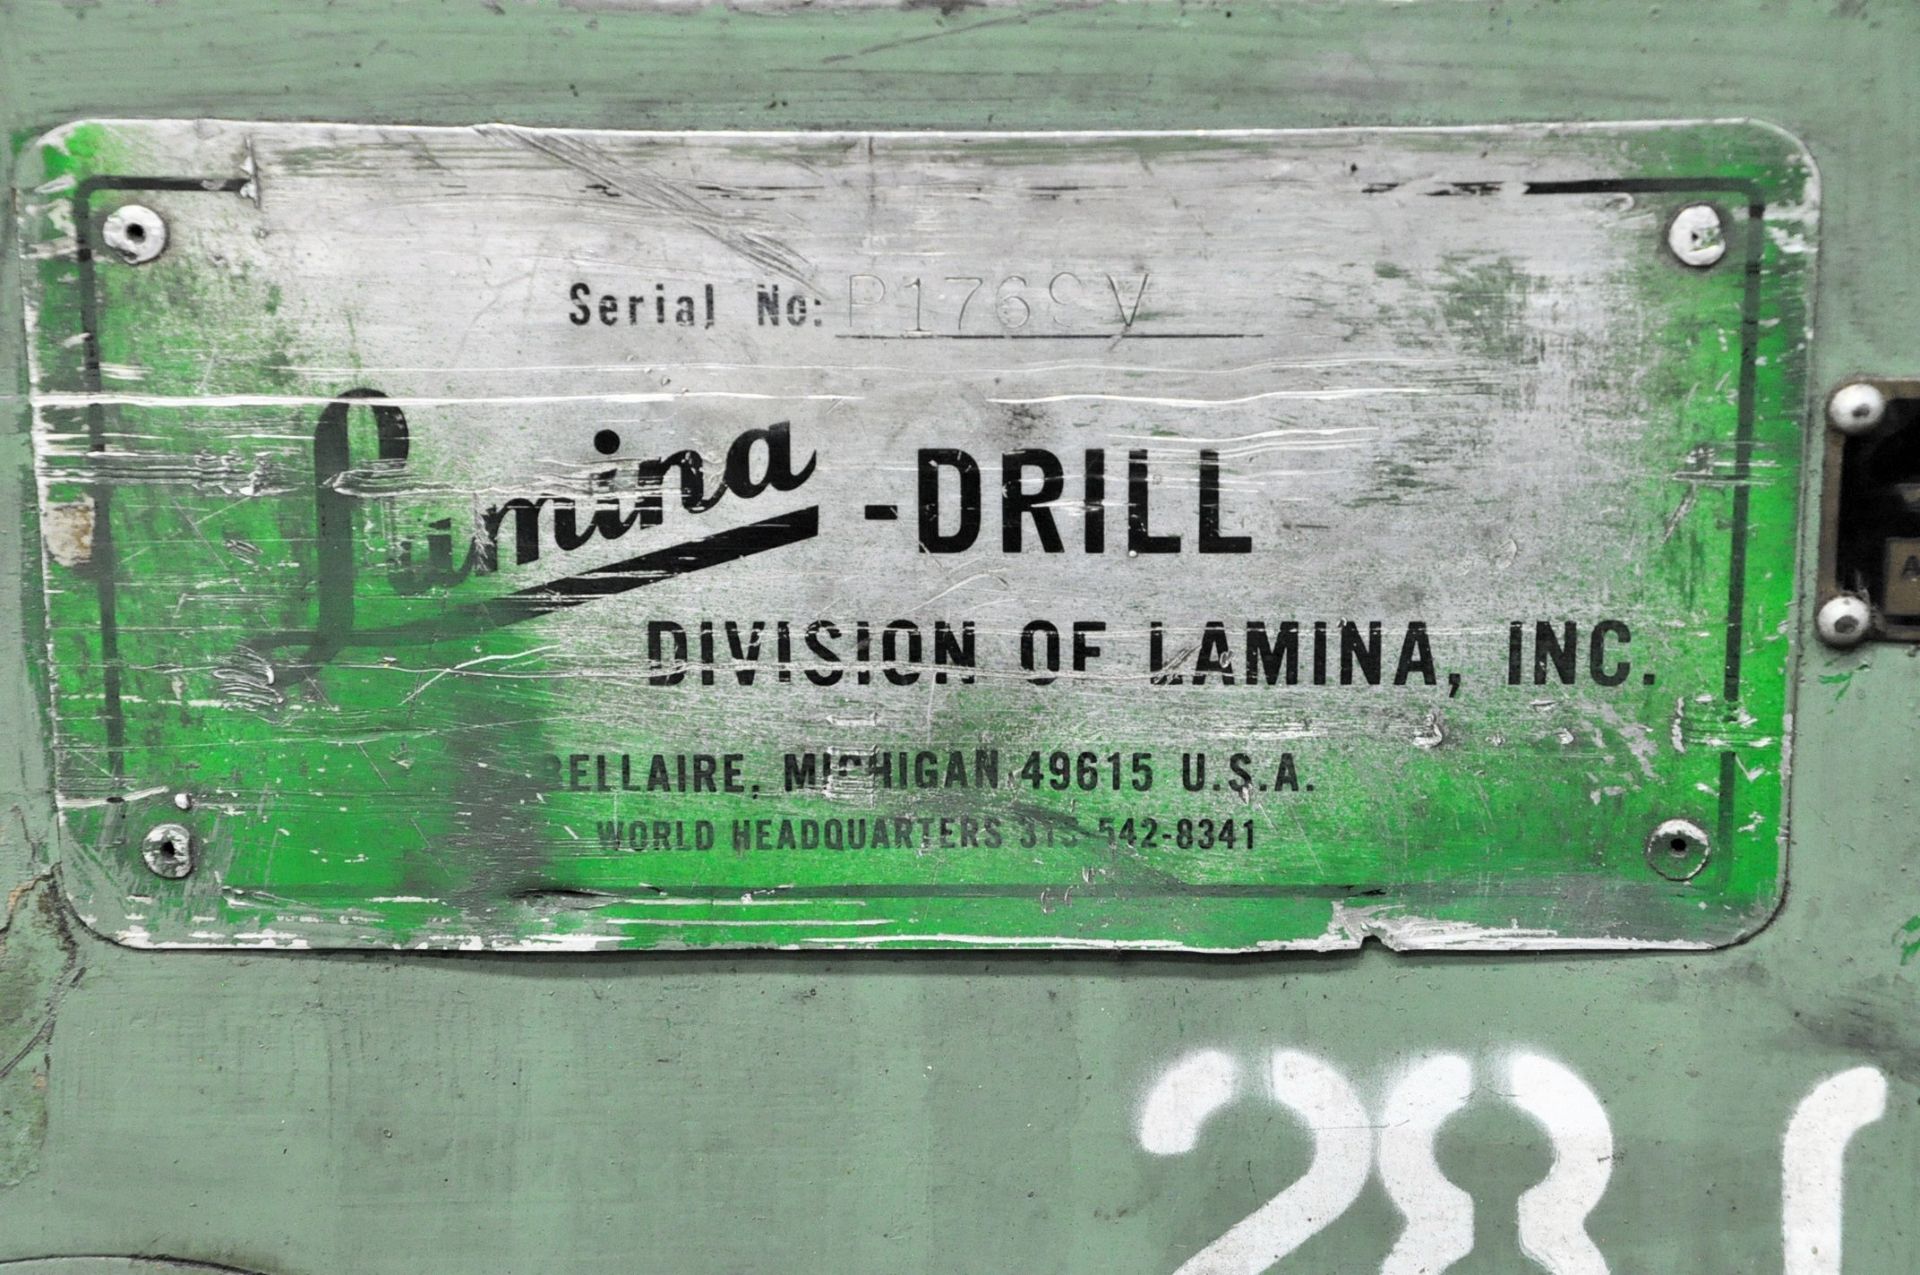 Lamina Portable Drill, S/n P1769V, (G-16), (Green Tag) - Image 3 of 3